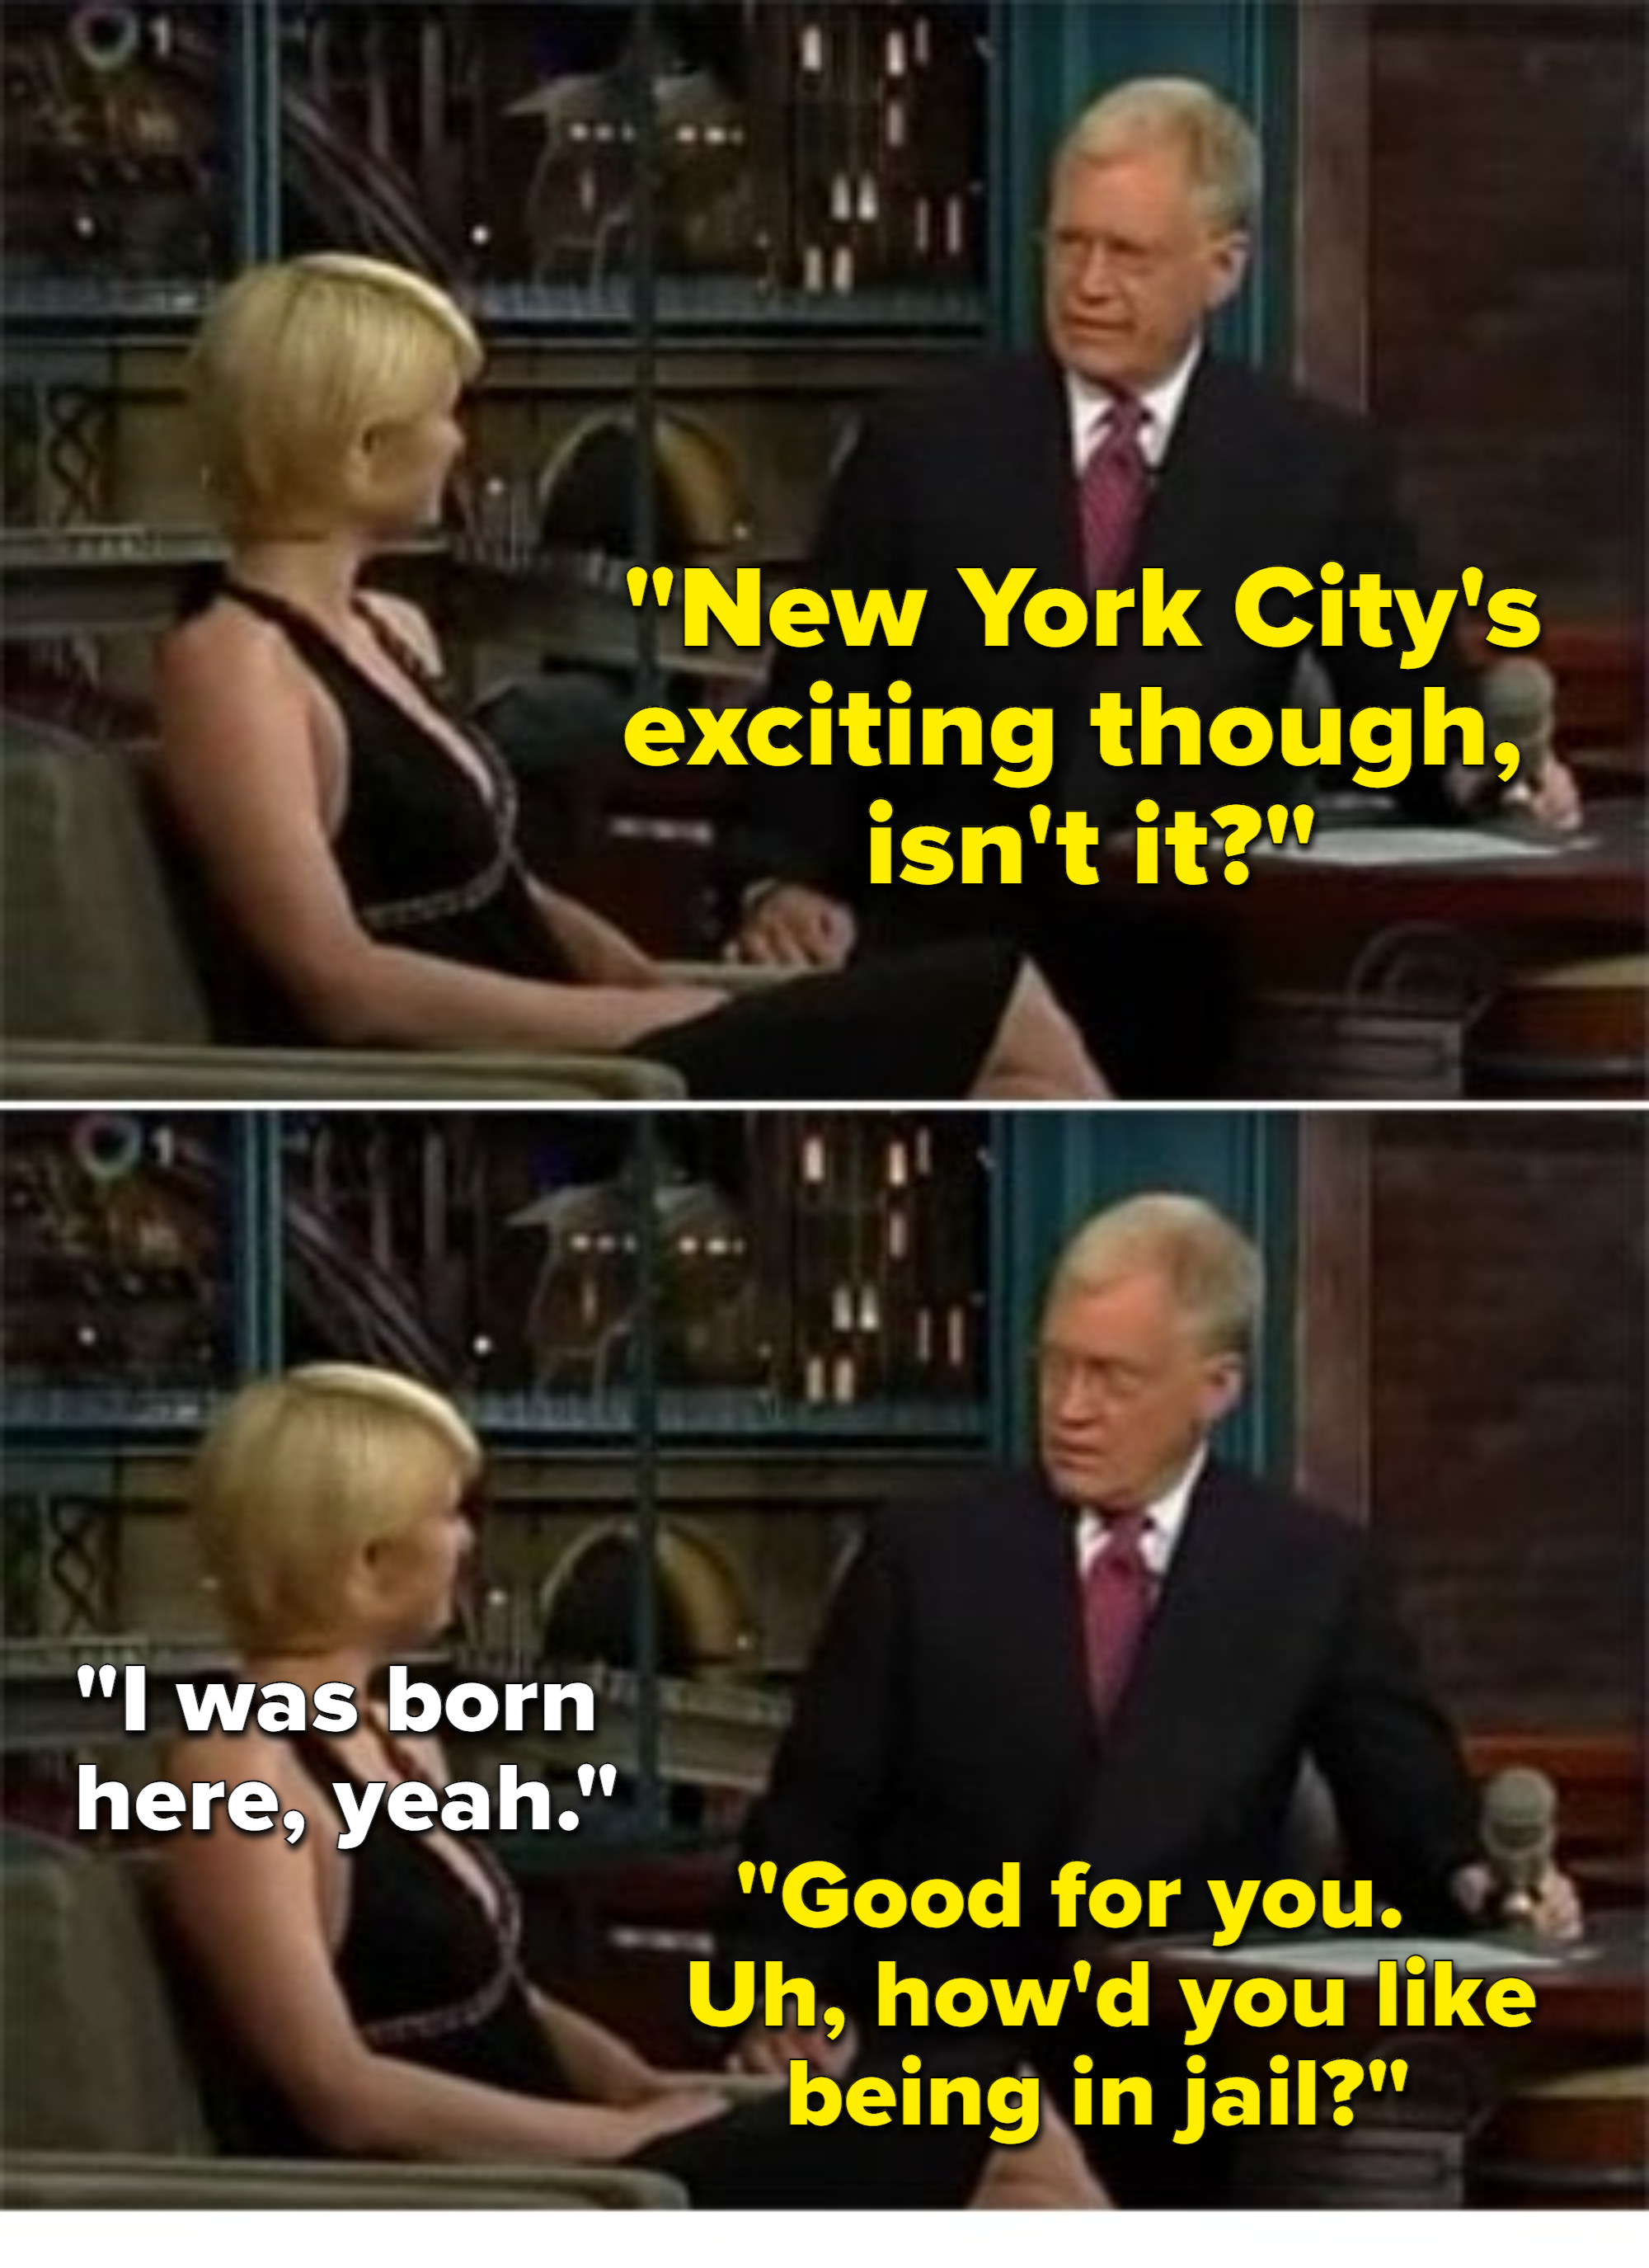 David Letterman joking about Paris Hilton being in jail. 